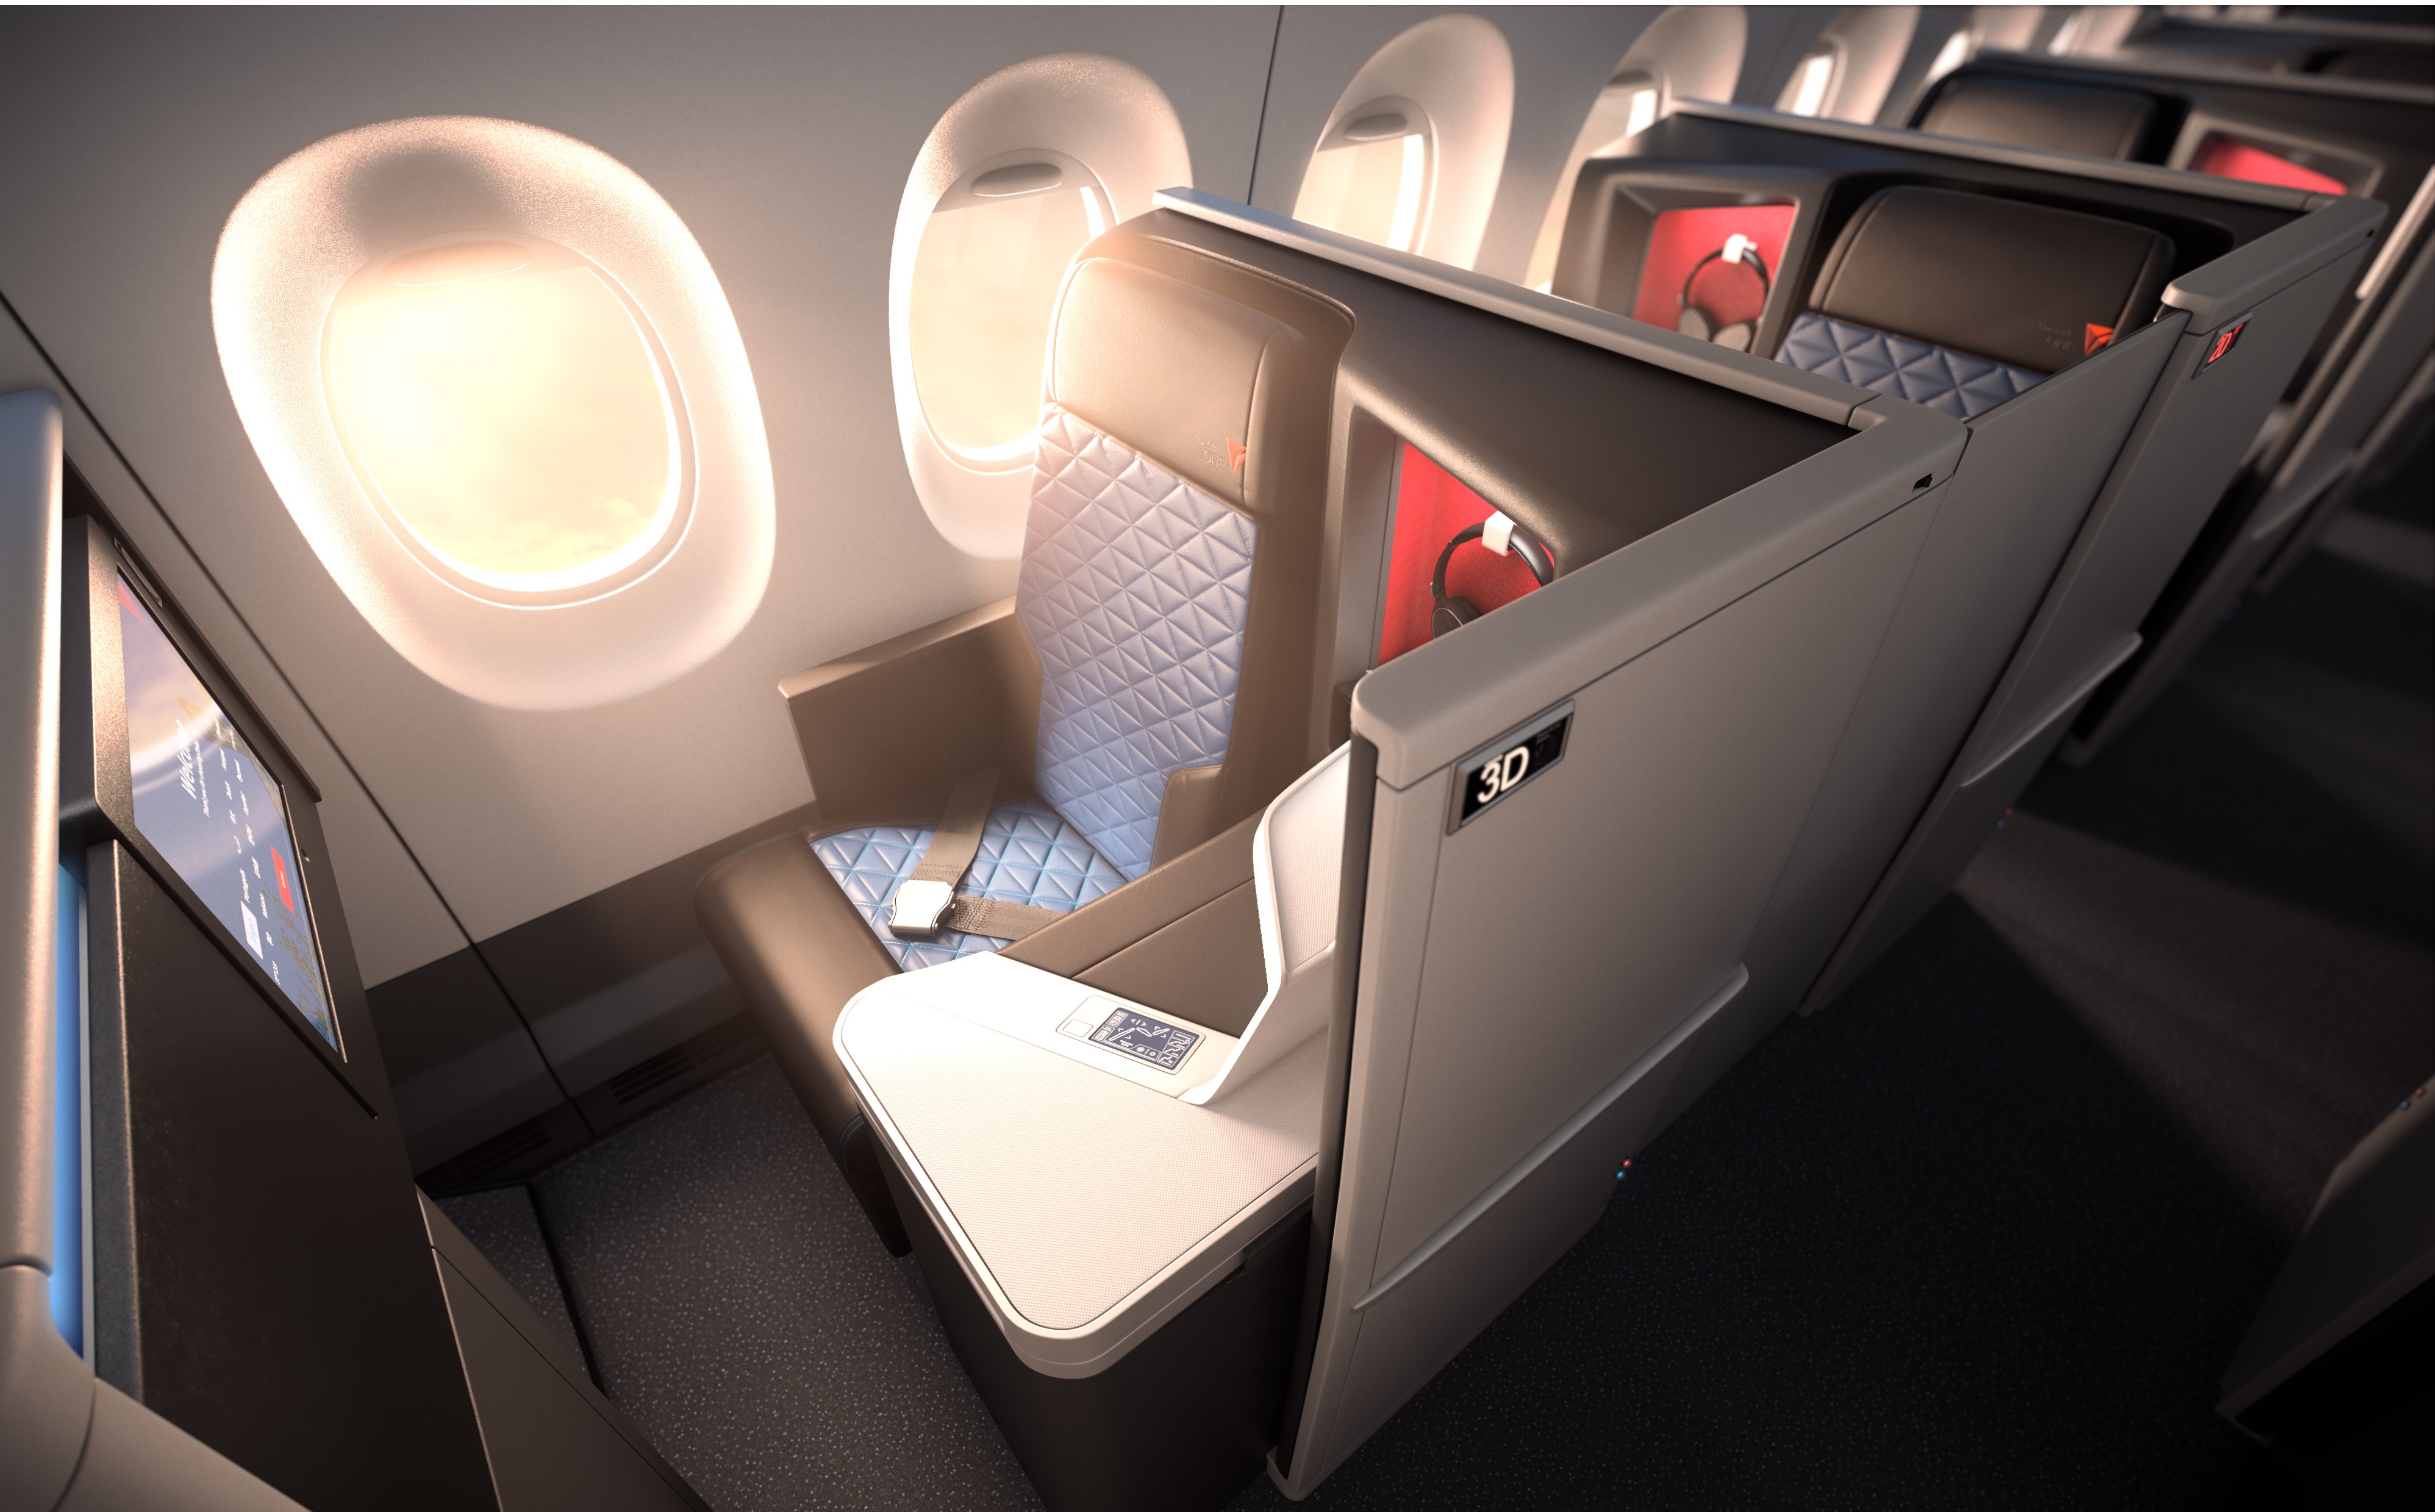 Une porte coulissante sur chaque siège pour préserver l'intimité des passagers /crédit photo Delta